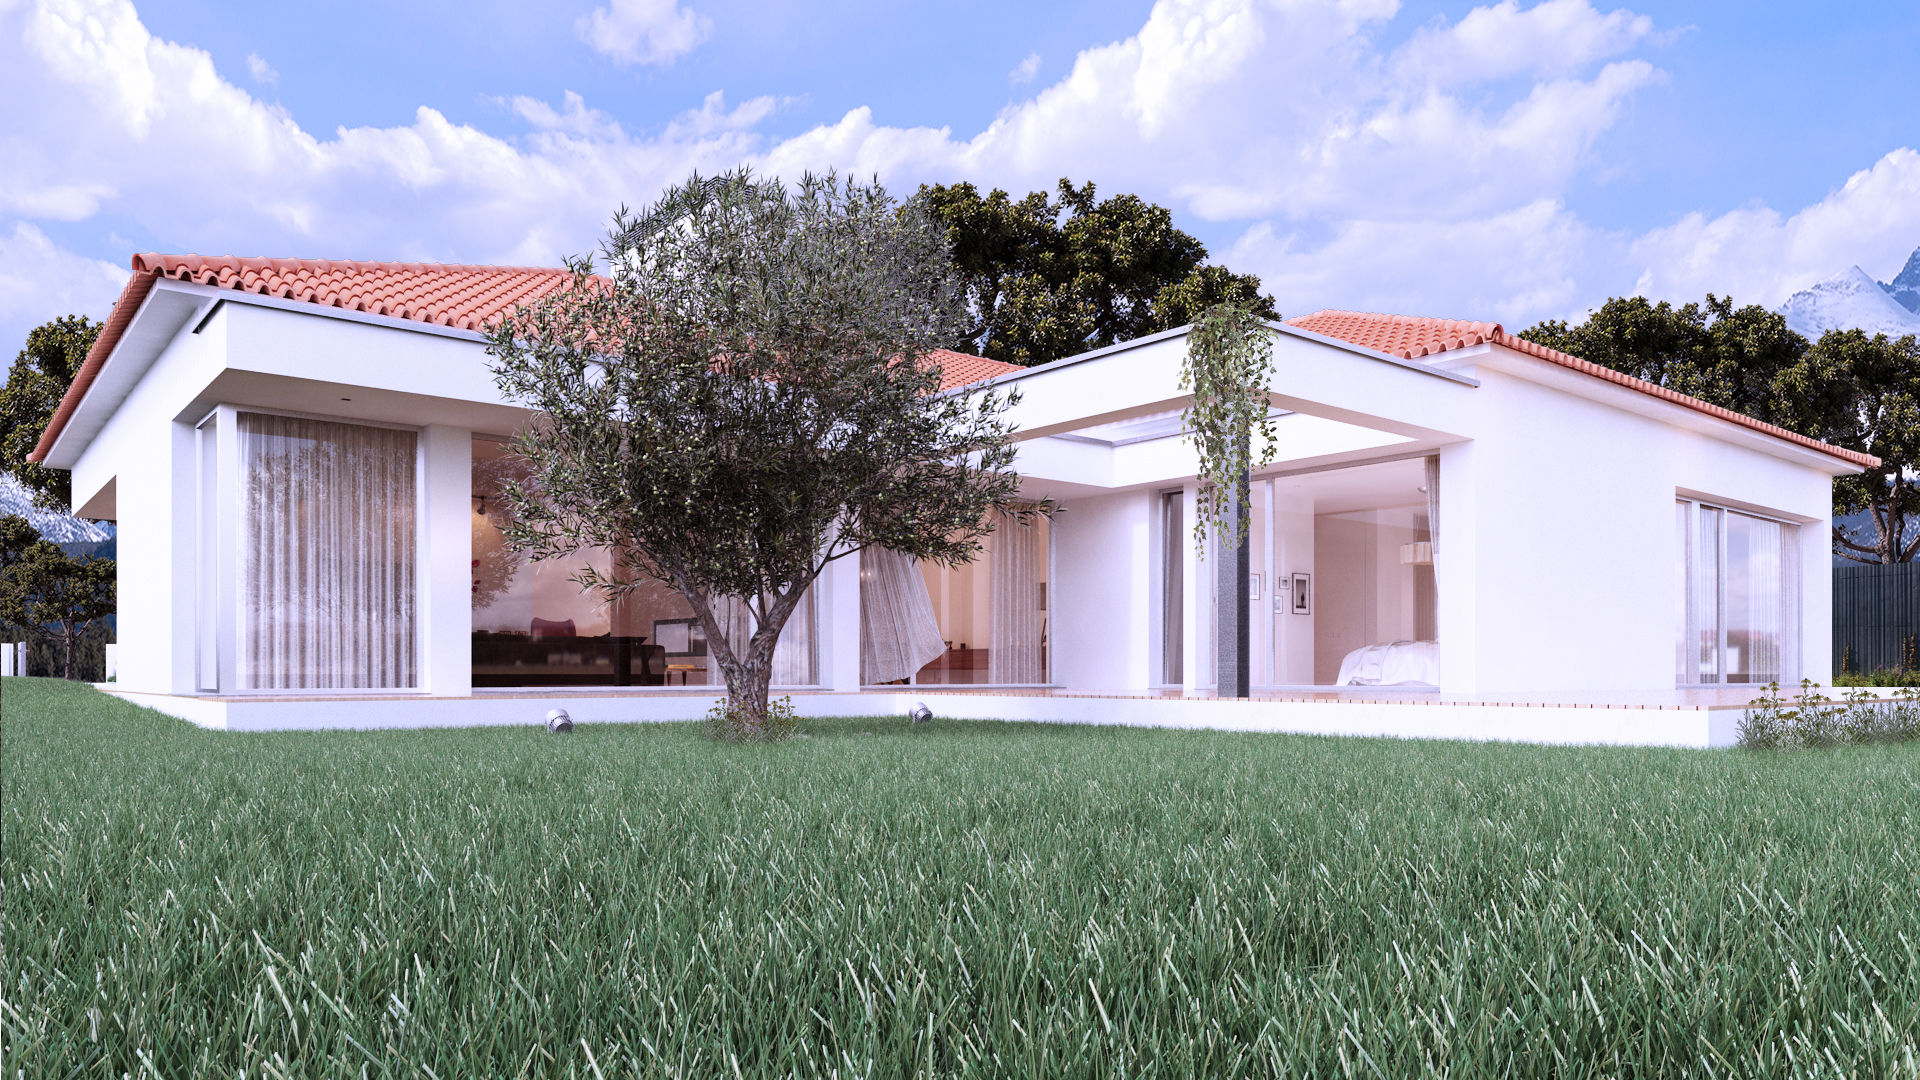 AA House, Rúben Ferreira | Arquitecto Rúben Ferreira | Arquitecto Casas estilo moderno: ideas, arquitectura e imágenes